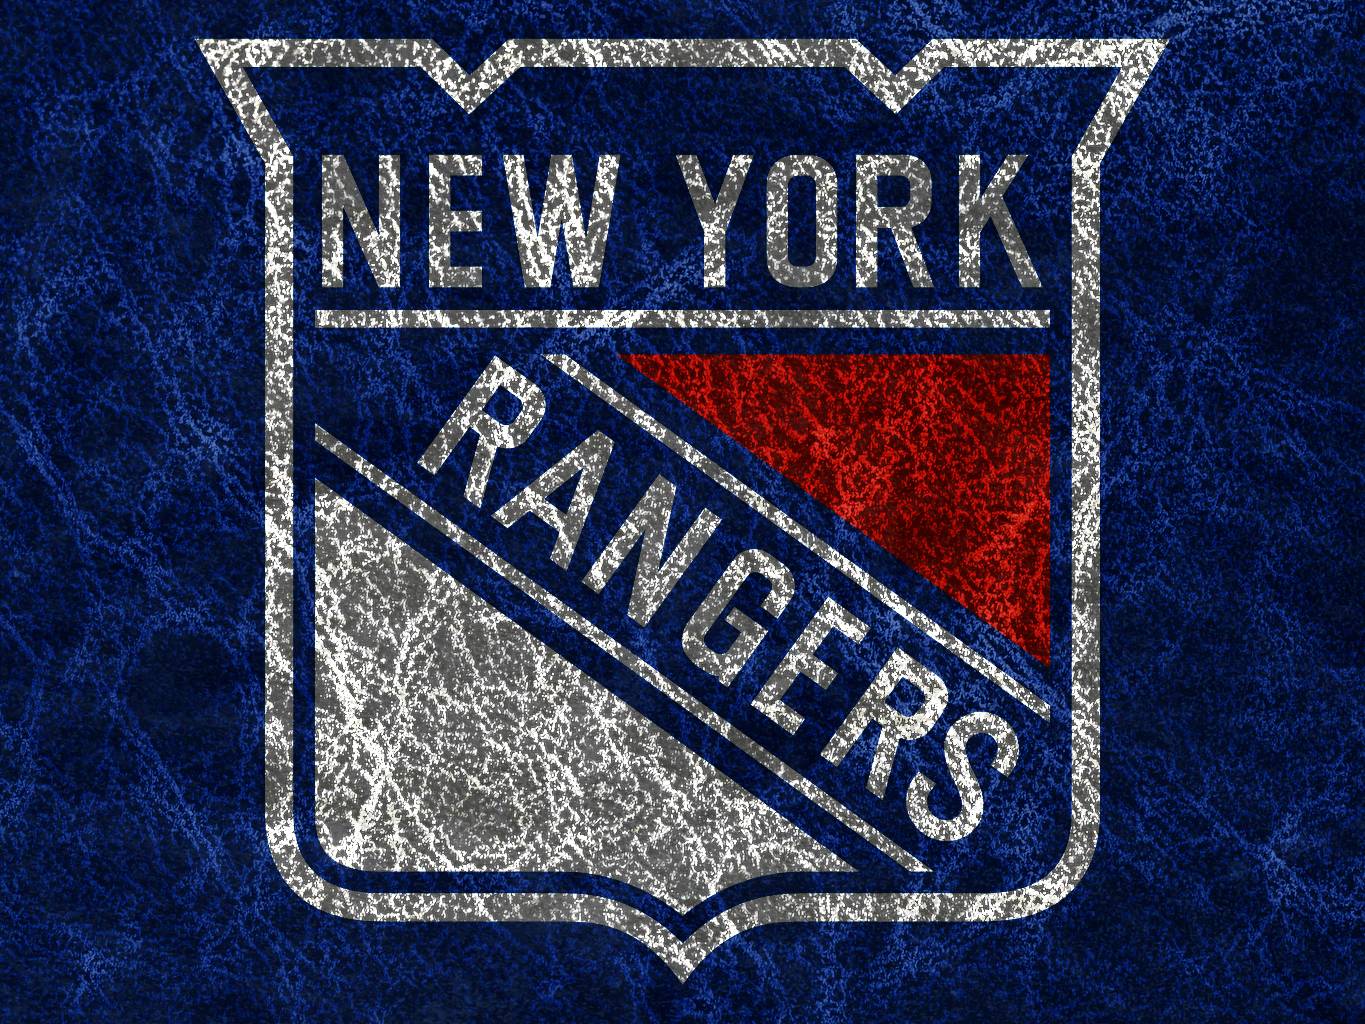 New York Rangers Wallpaper. High Definition Wallpaper